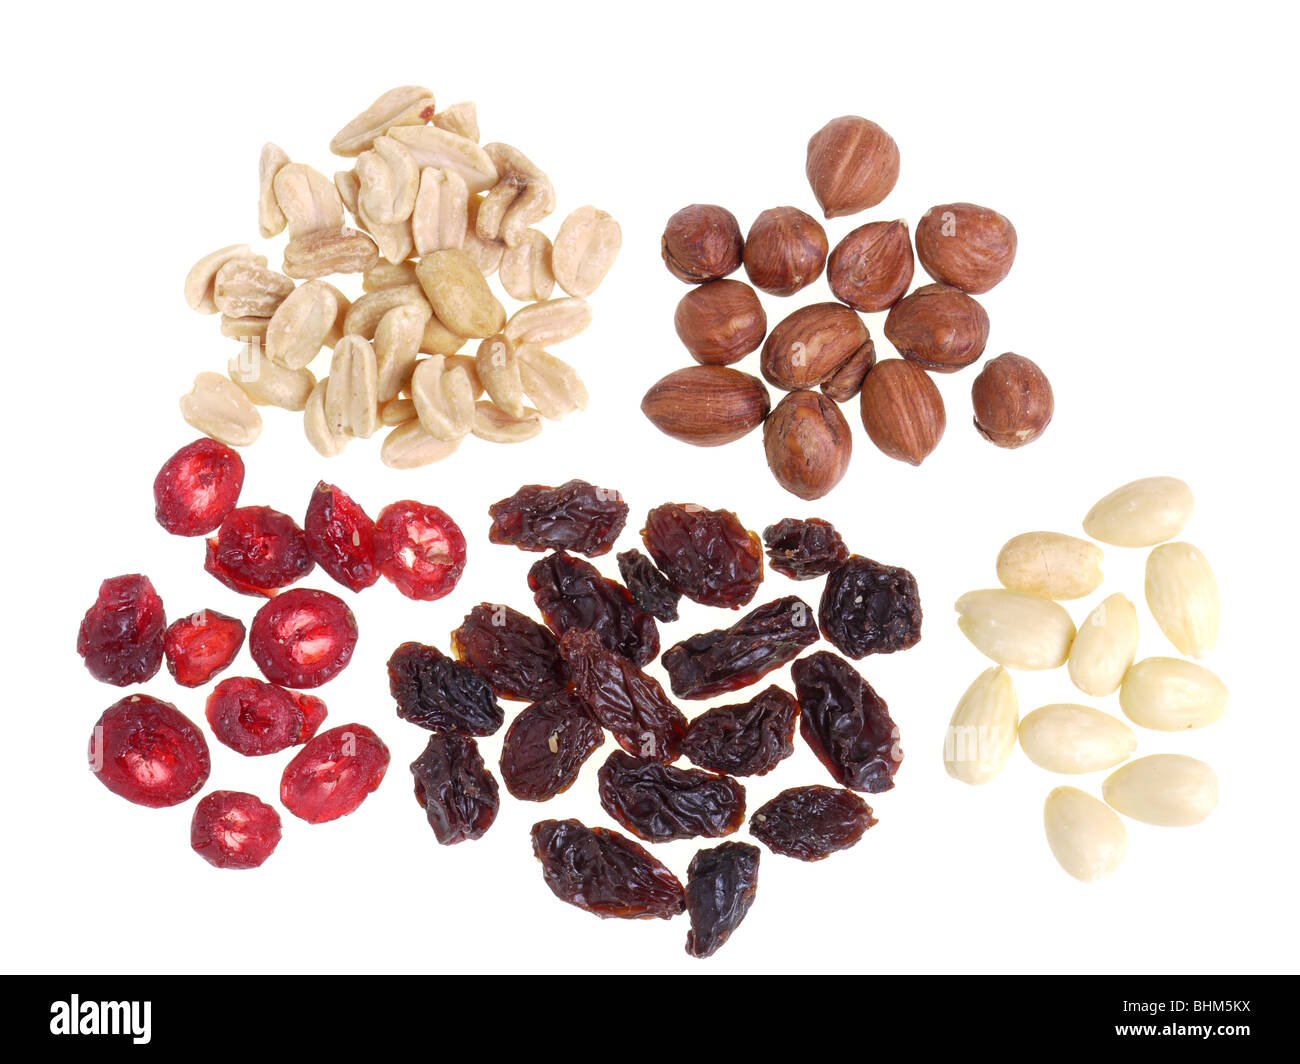 Getrocknet in Scheiben geschnittenen Cranberry, Rosinen, Haselnüsse, Erdnüsse und Mandeln auf weißem Hintergrund Stockfoto